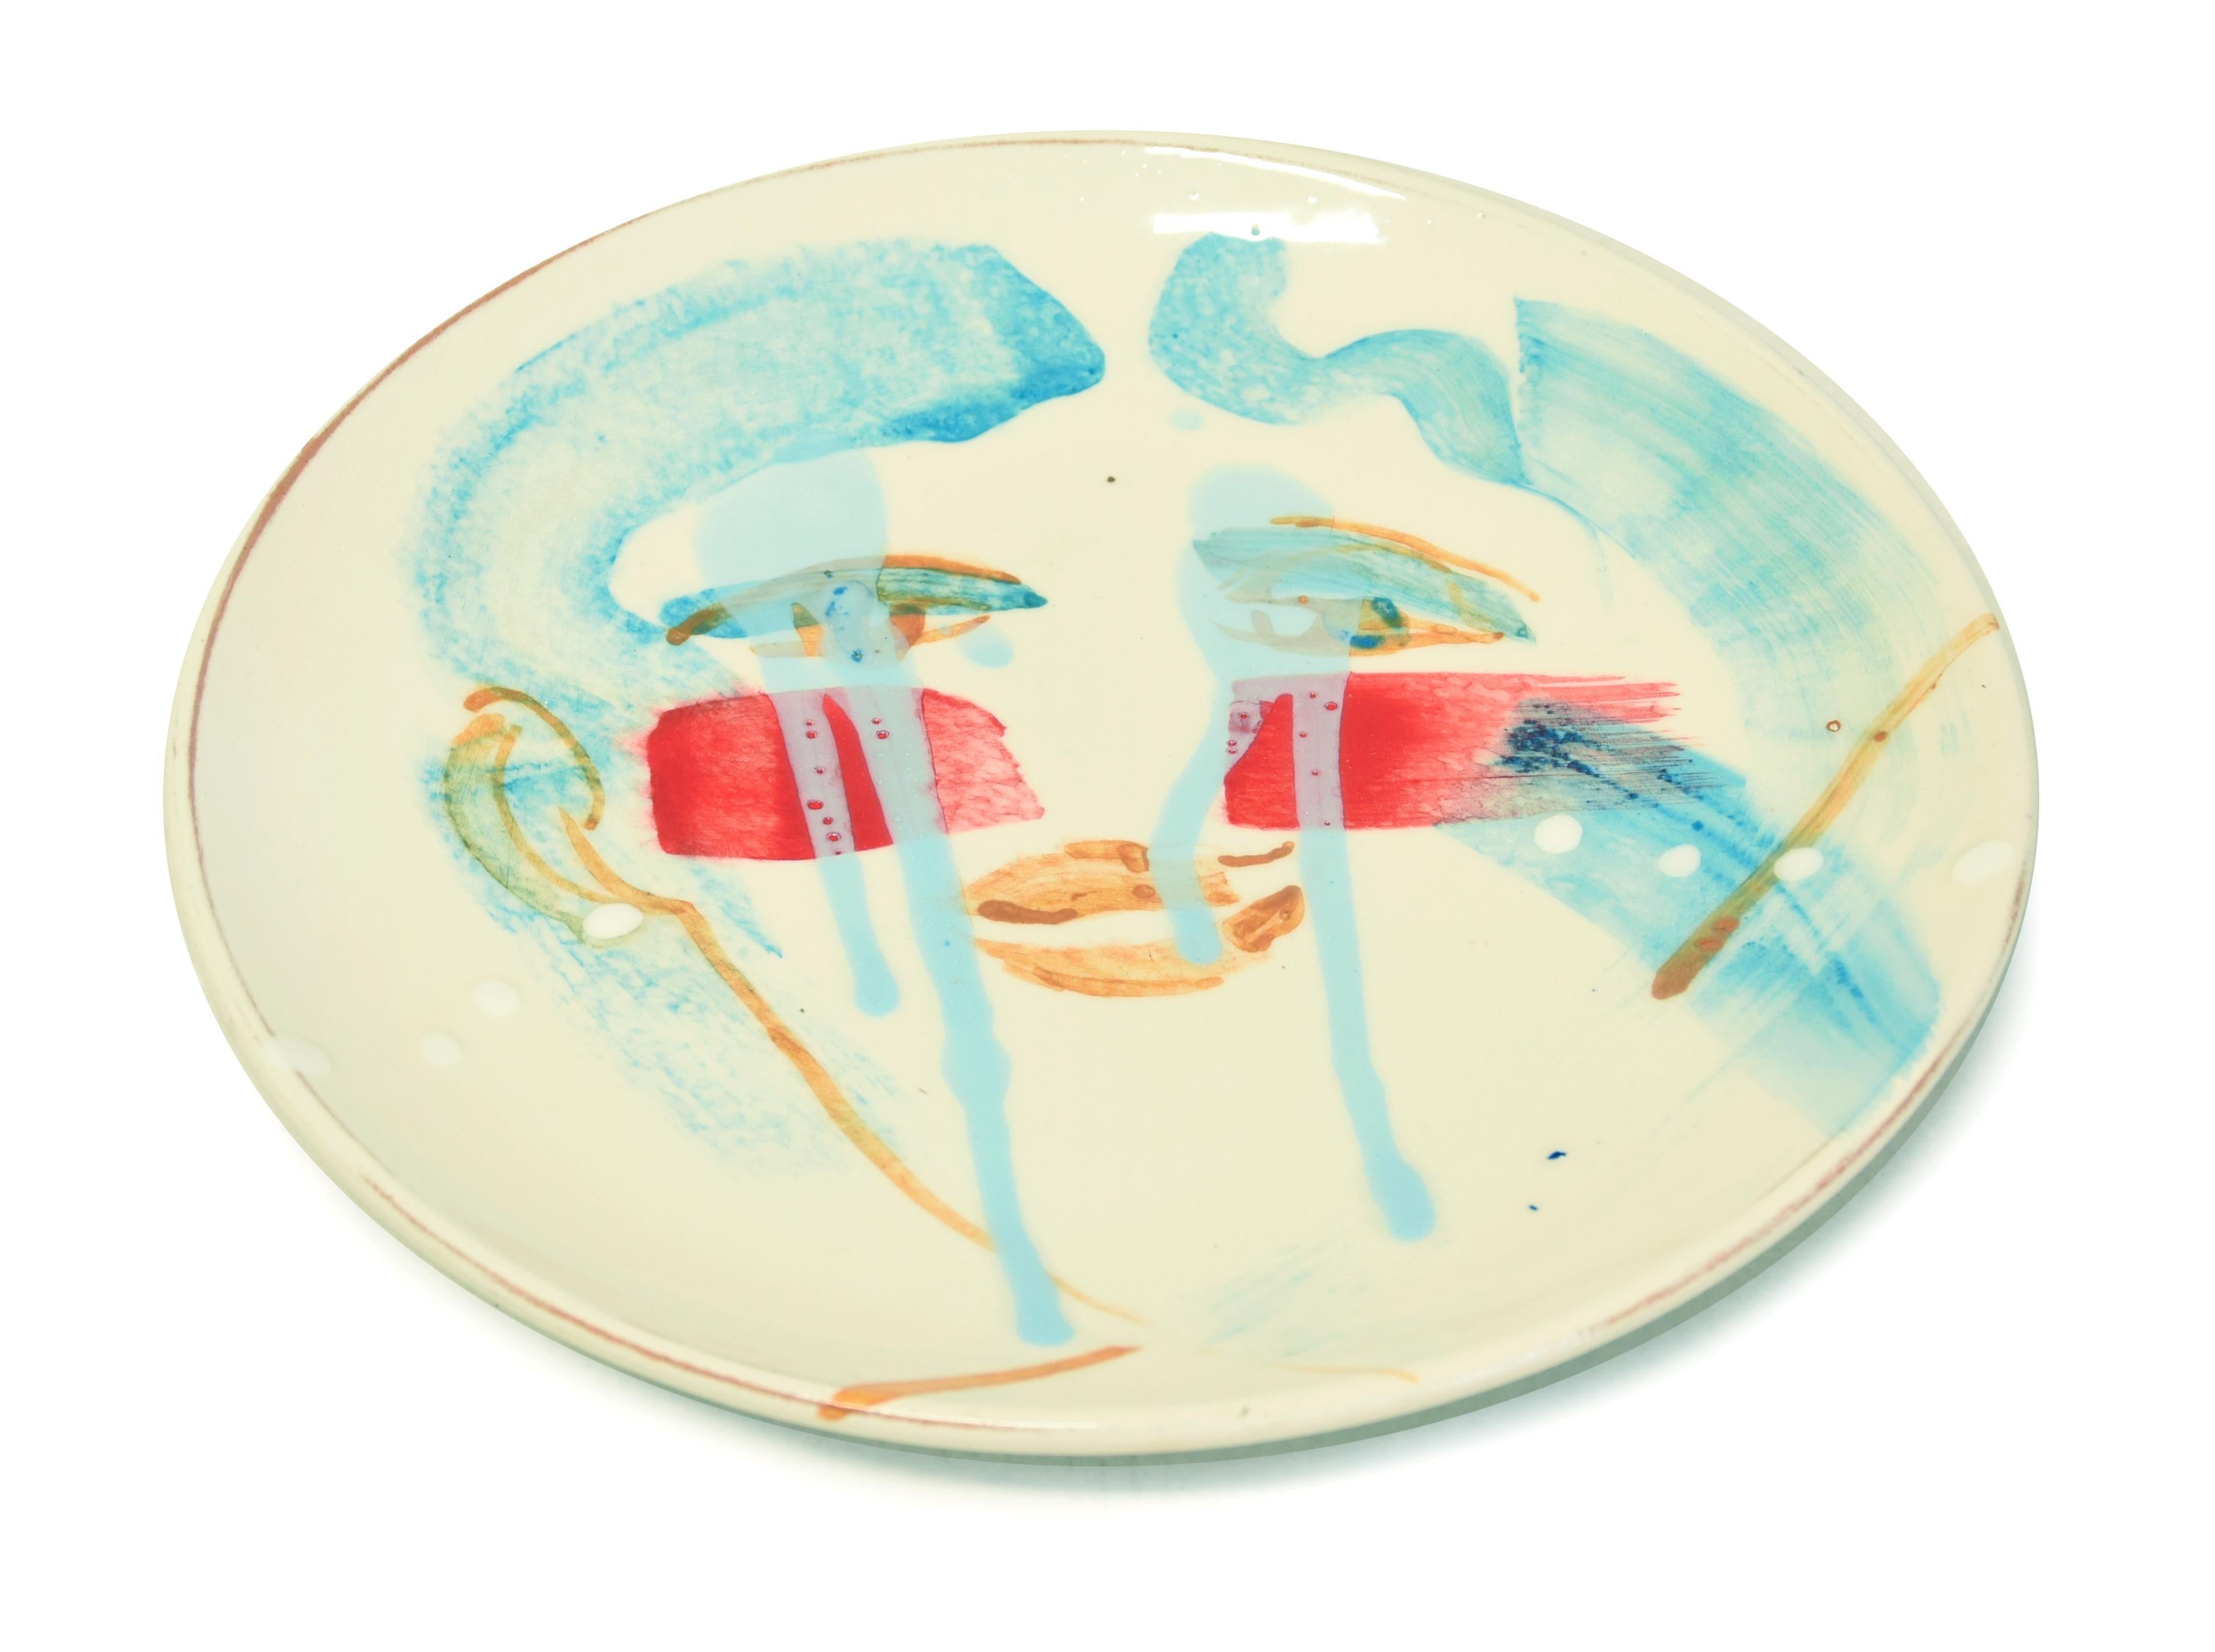 Teardrops - Hand-made Flat Ceramic Dish by A. Kurakina - 2019 - Contemporary Art by Anastasia Kurakina